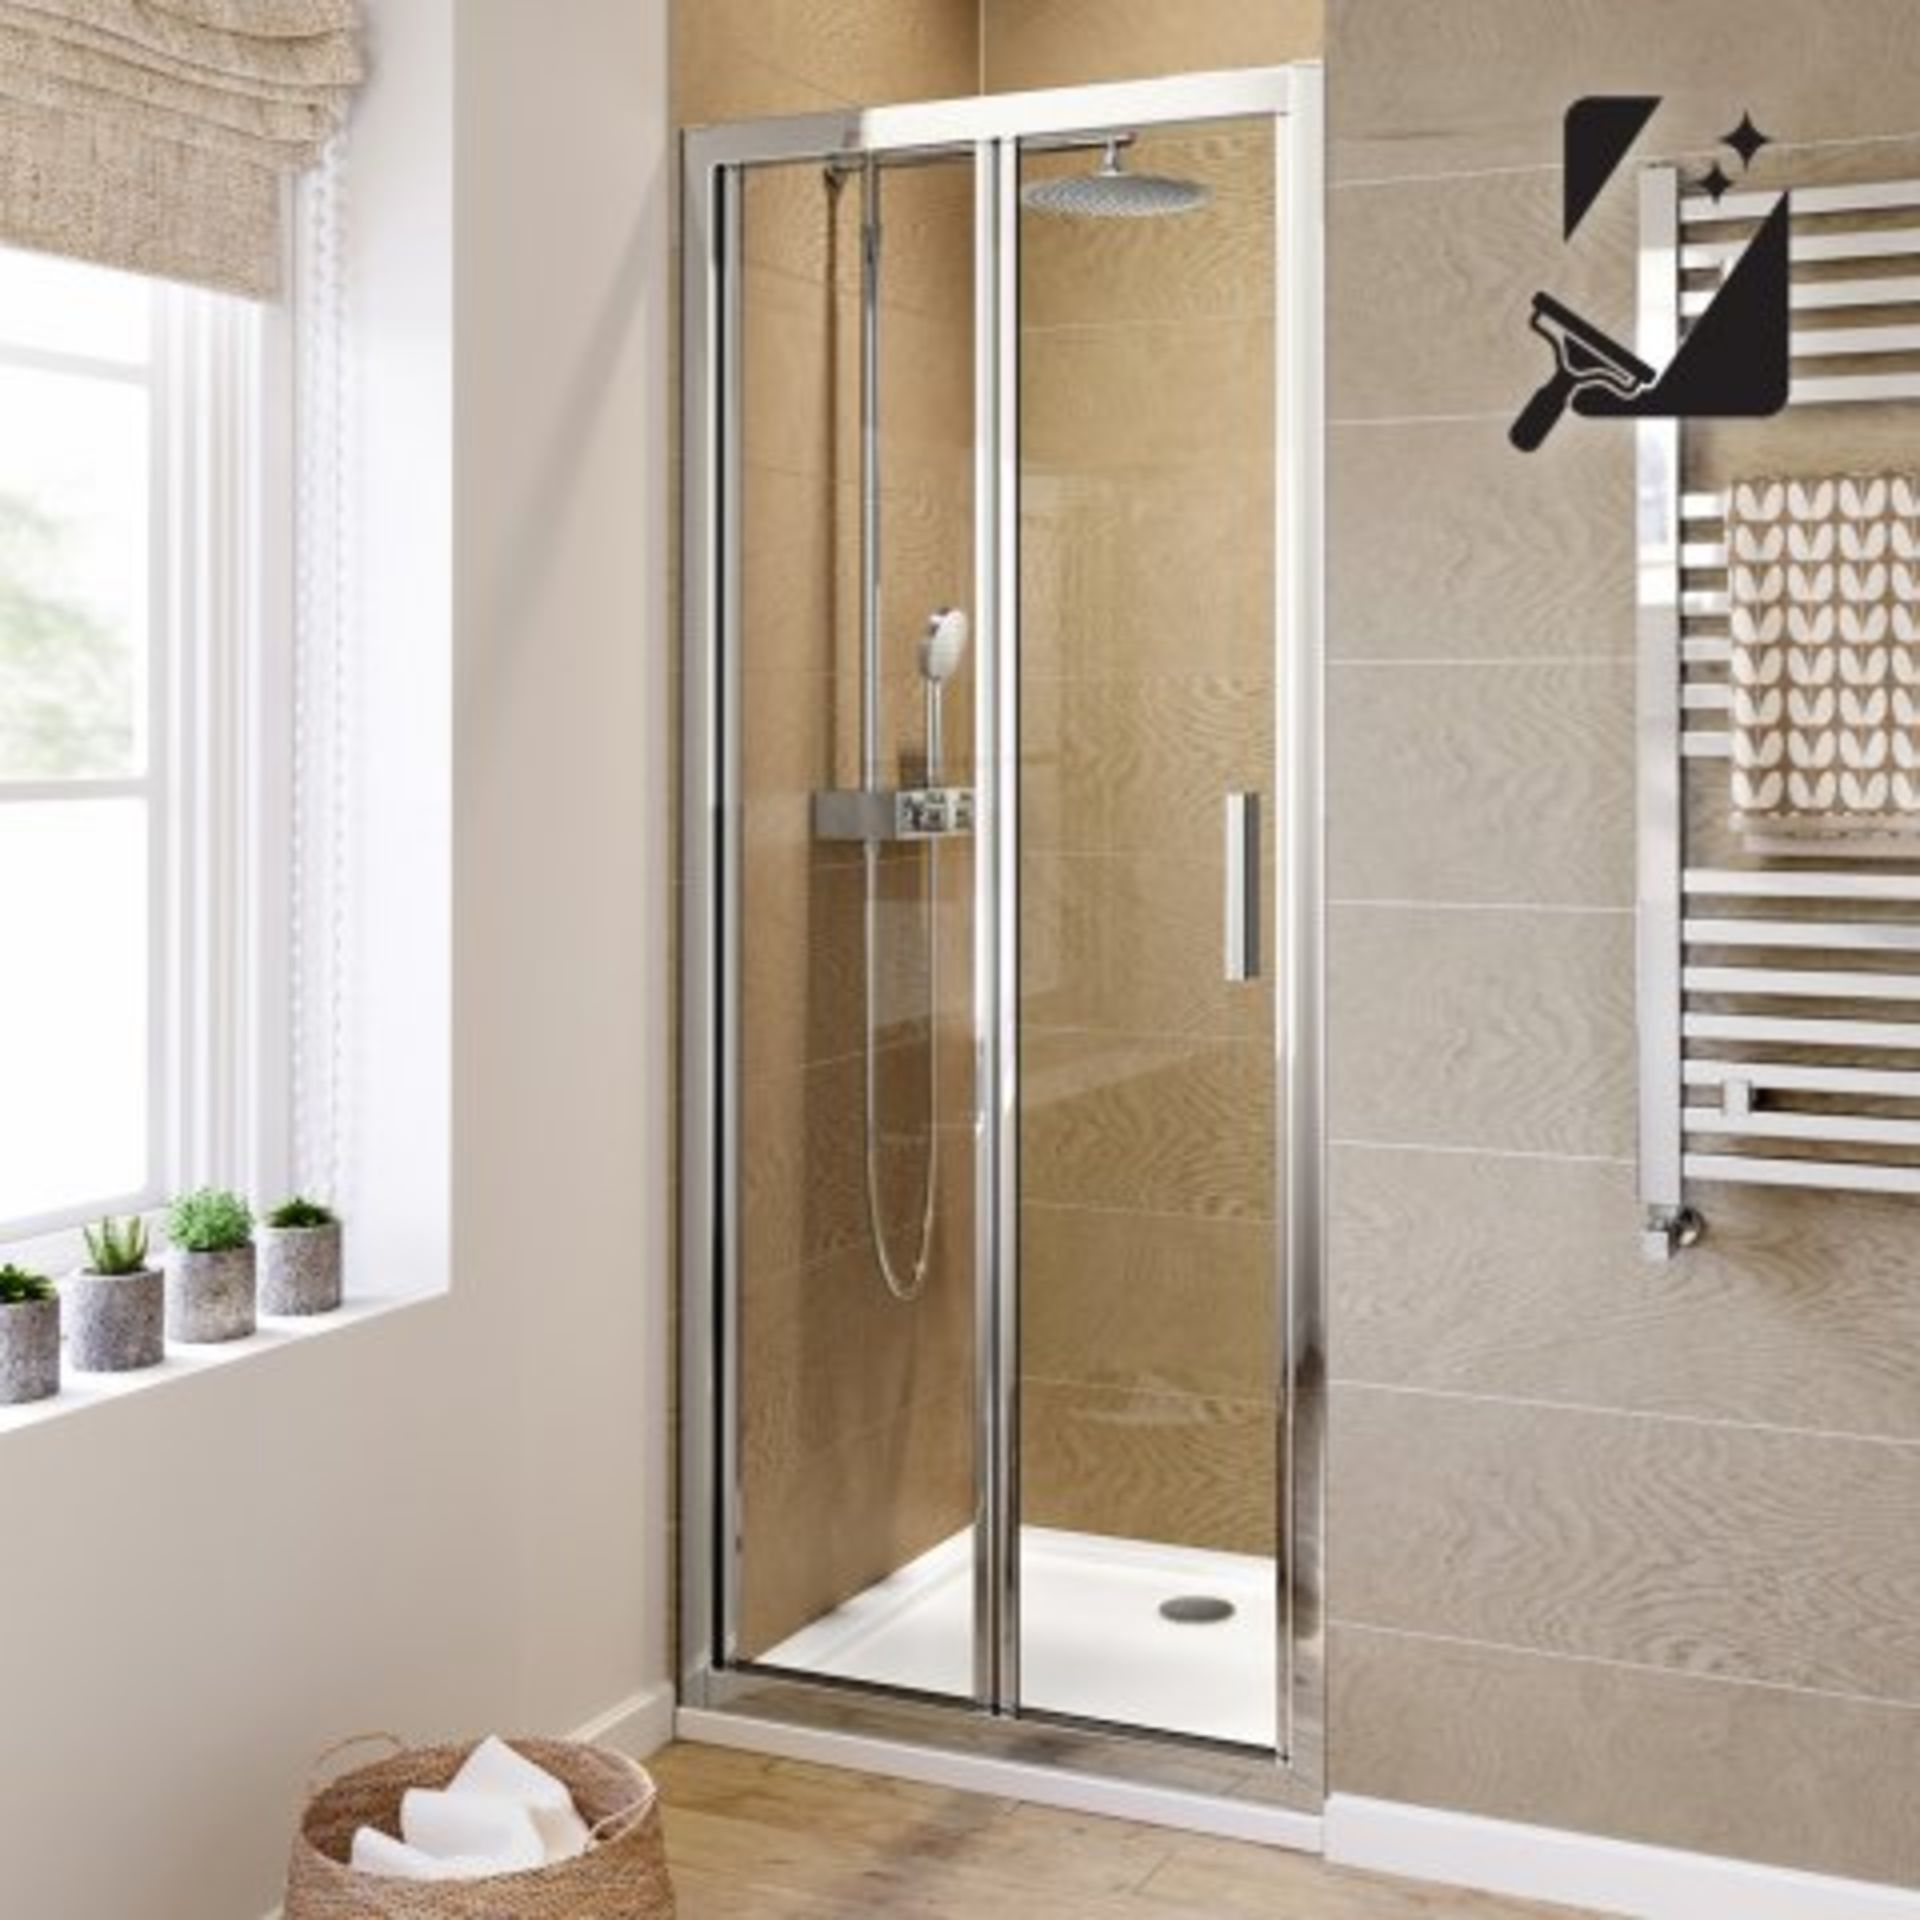 (K41) 900mm - 6mm - Elements EasyClean Bifold Shower Door. RRP £299.99. Essential Design Our